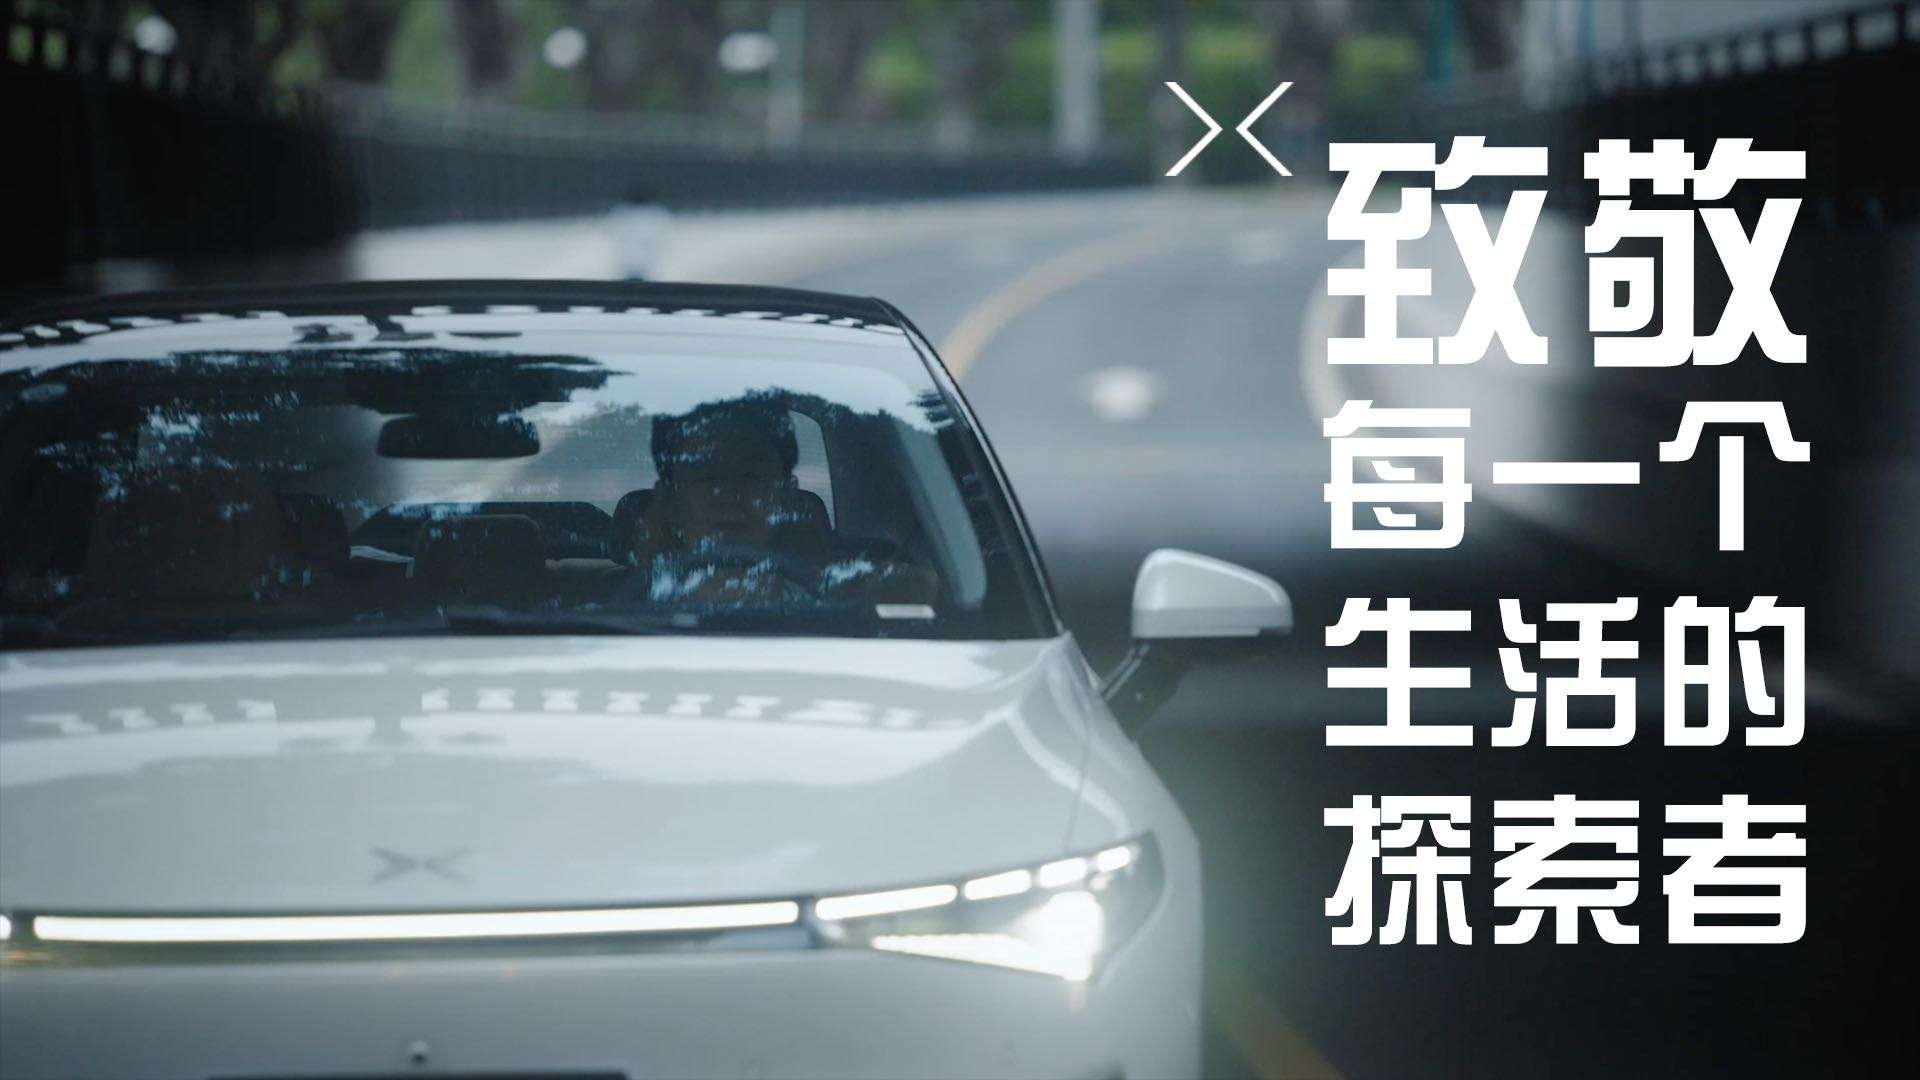 影行天下 | 小鹏汽车品牌车主故事《致敬每一个生活的探索者》